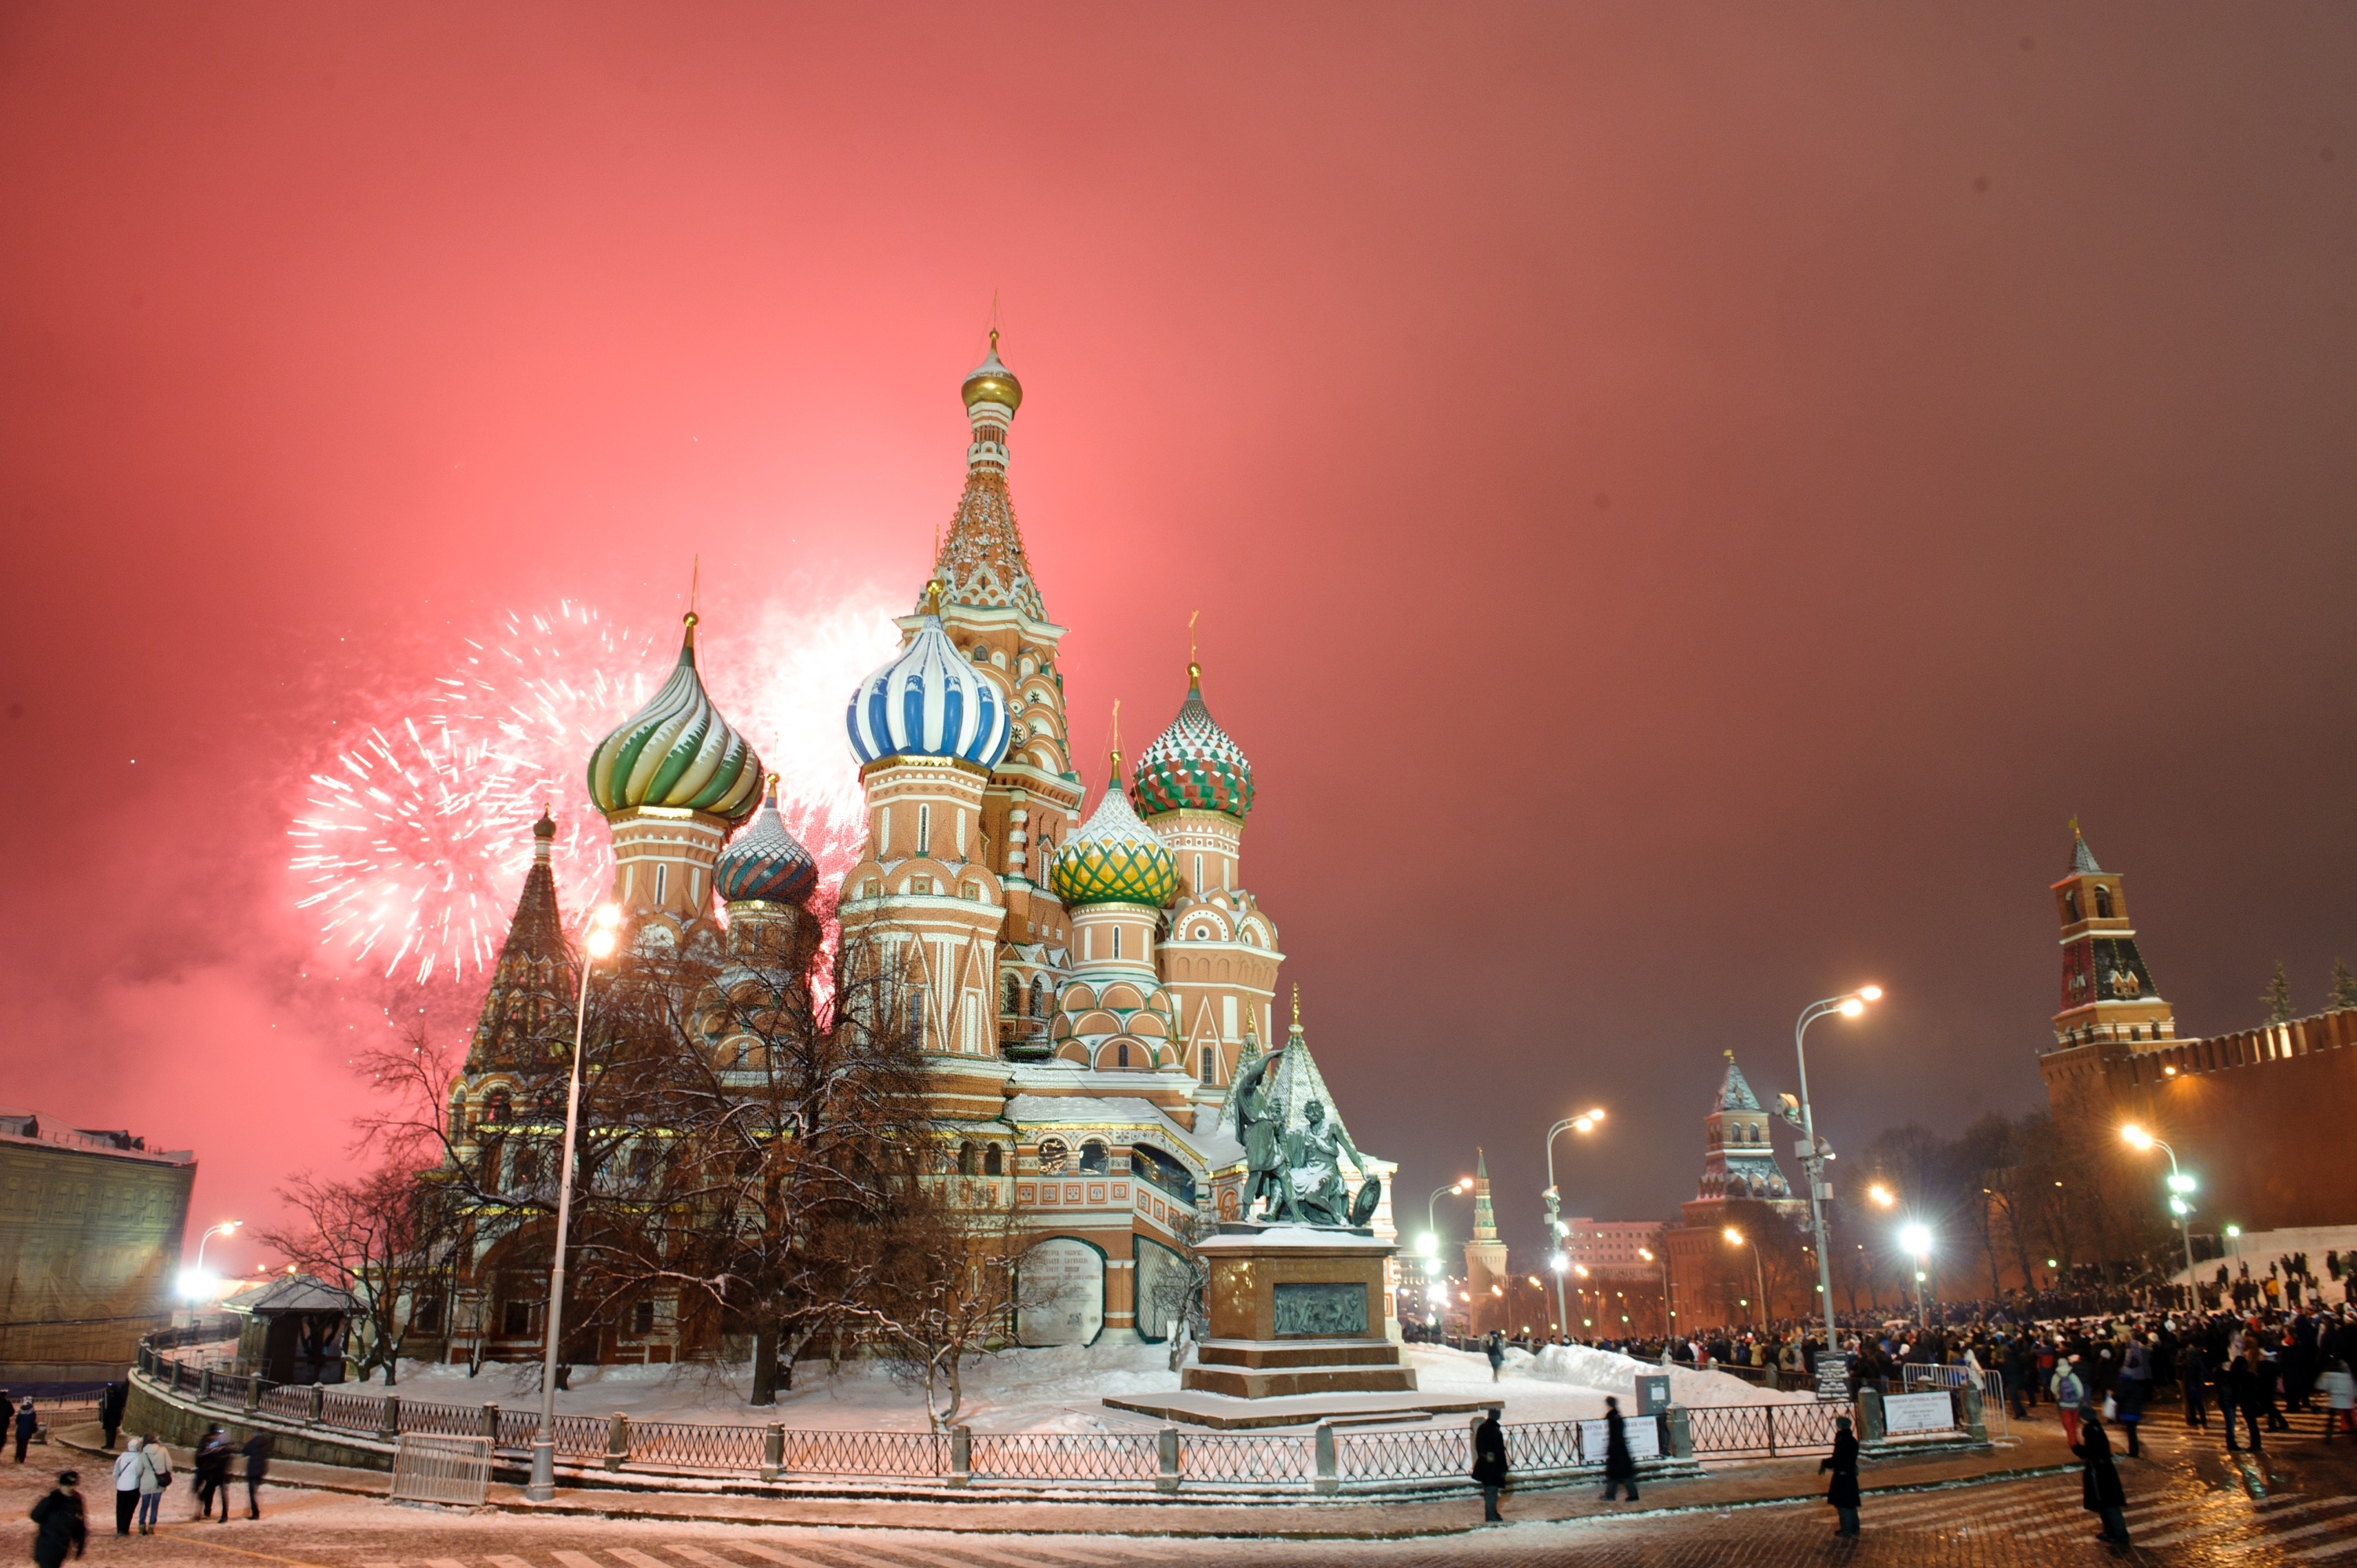 壁纸 莫斯科，俄罗斯，城市夜，克里姆林宫，河，灯 3840x2160 UHD 4K 高清壁纸, 图片, 照片